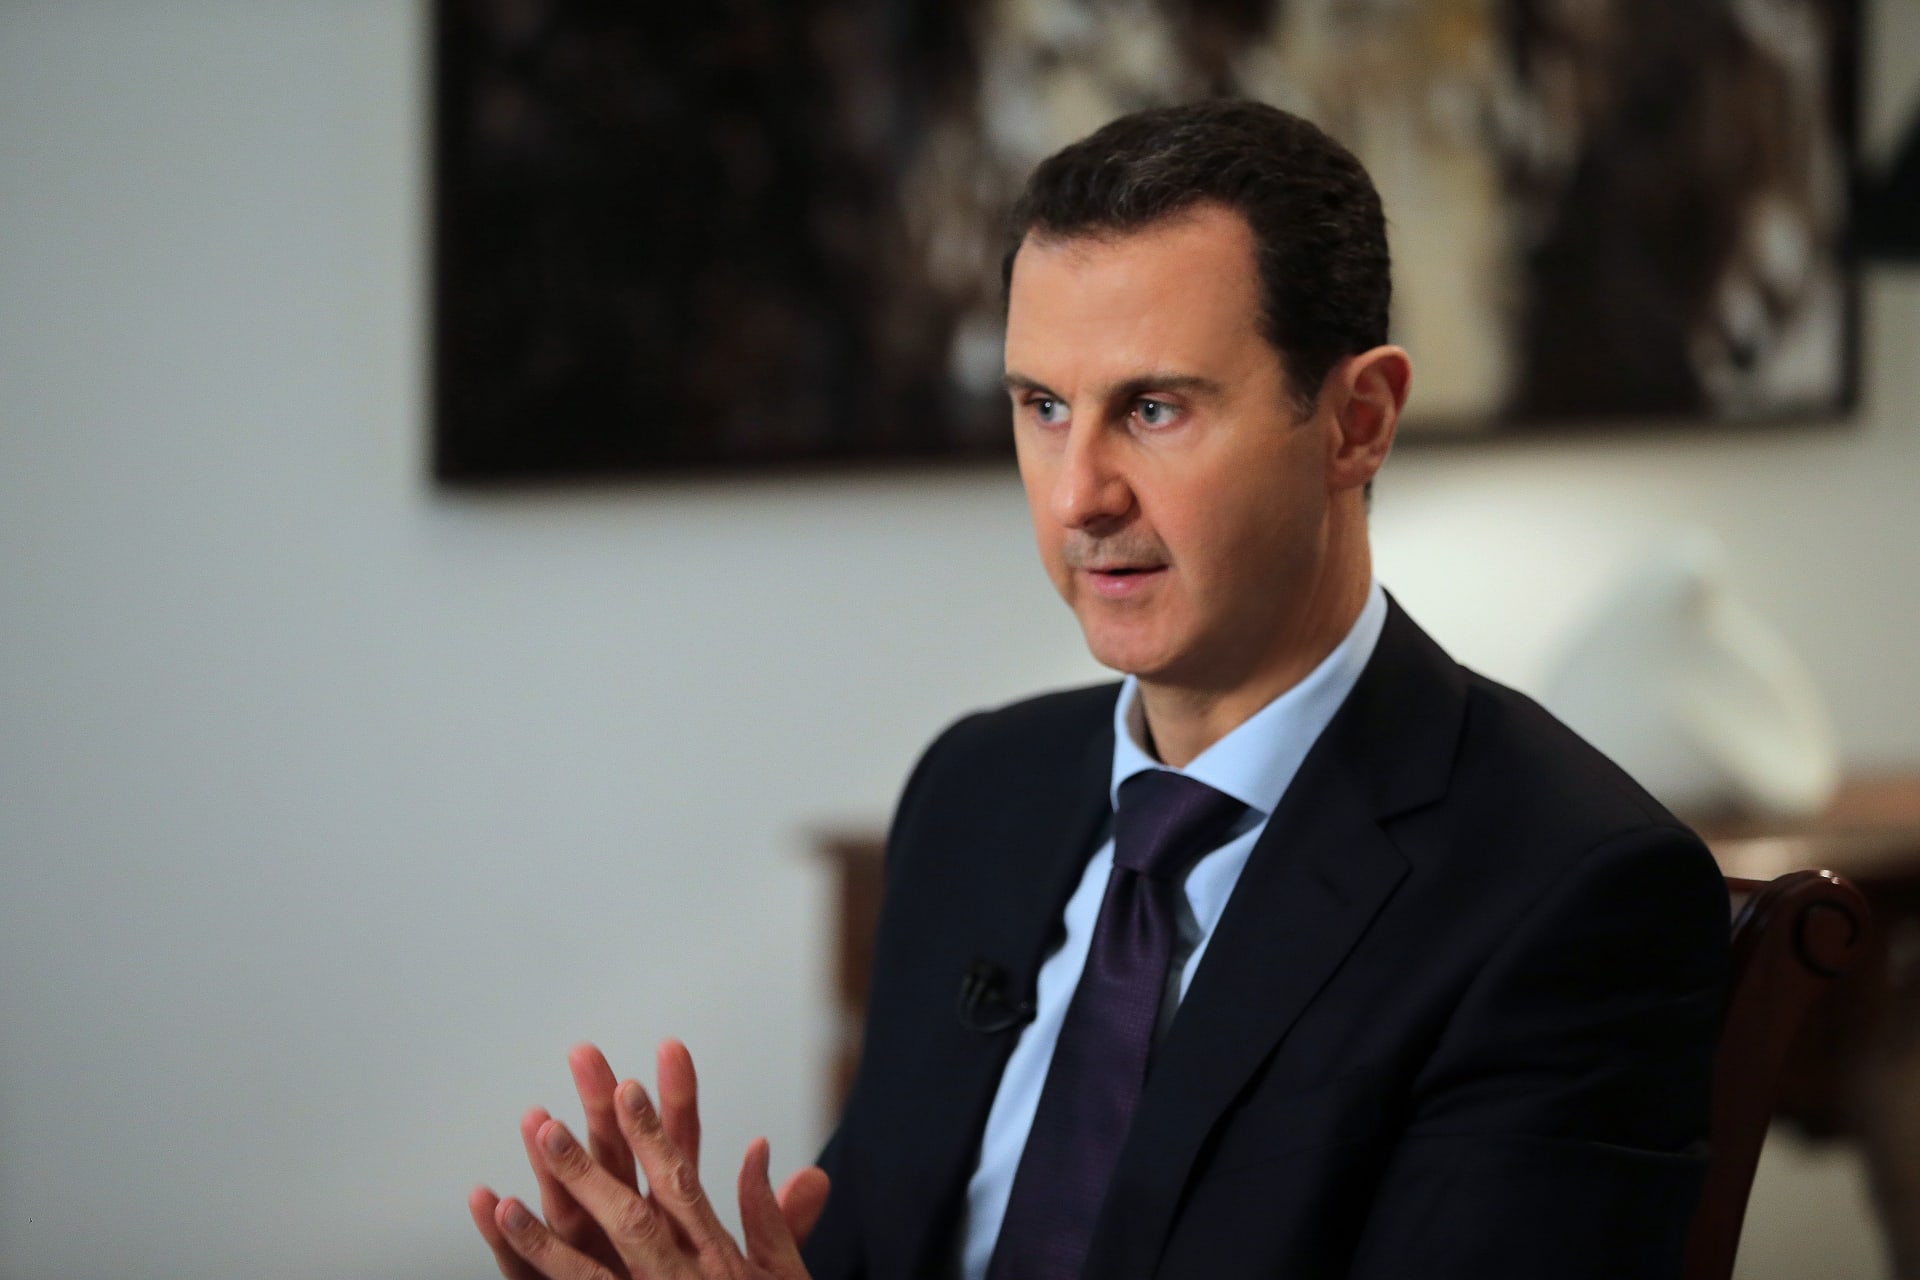 بشار الأسد: ما قصة قانون "تجريم التعذيب" الذي أطلقه الرئيس السوري وكيف استقبله المغردون؟